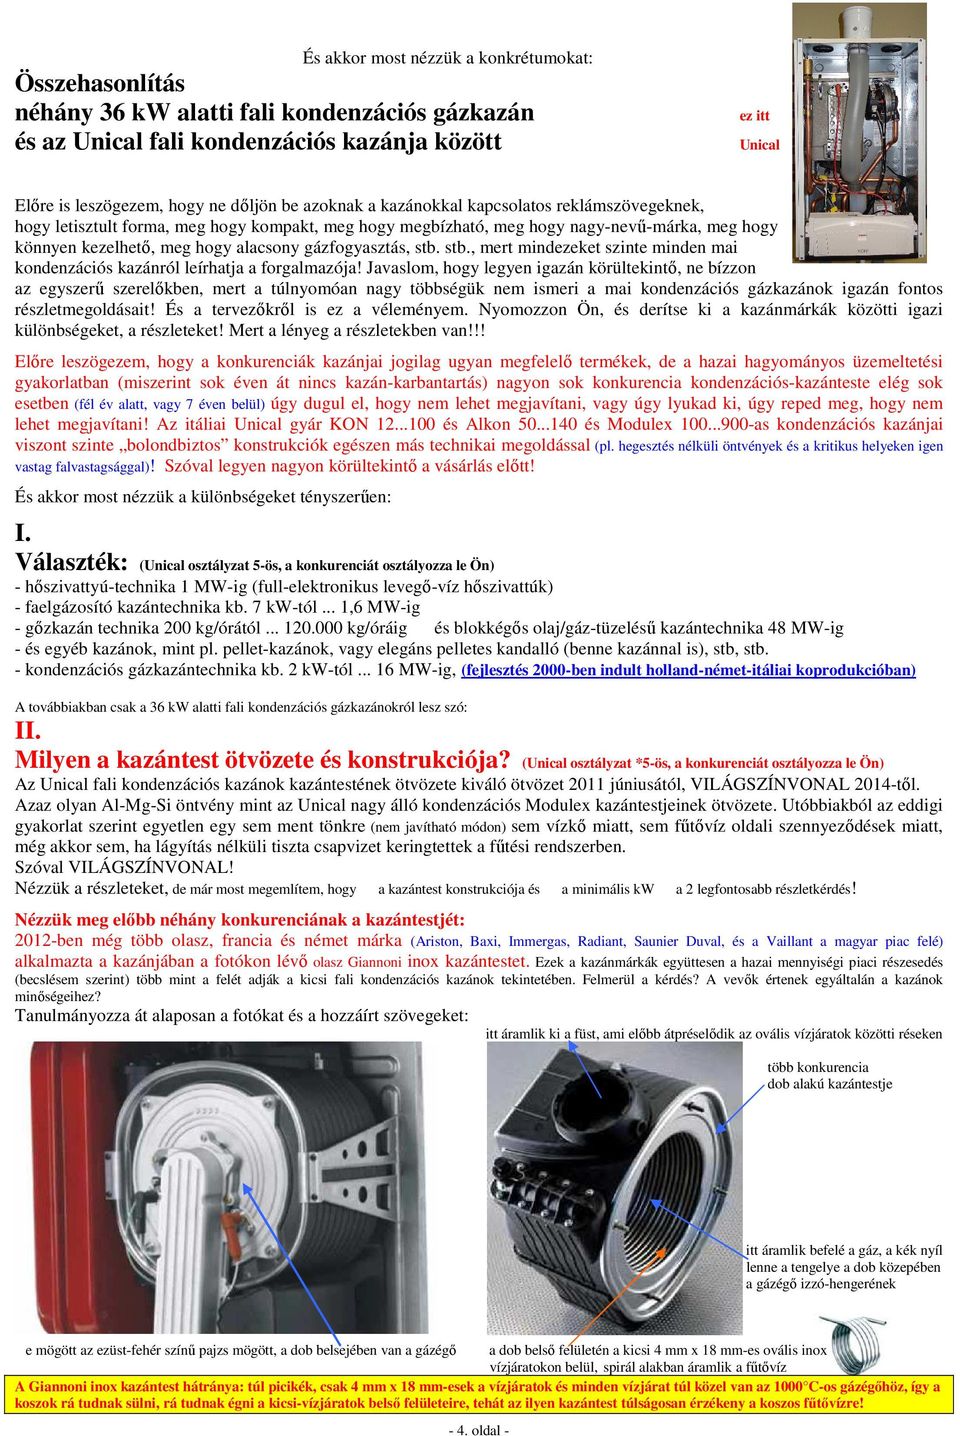 Összehasonlítás. néhány (36 kw alatti) fali kondenzációs gázkazán és az  Unical fali kondenzációs kazánja között - PDF Ingyenes letöltés